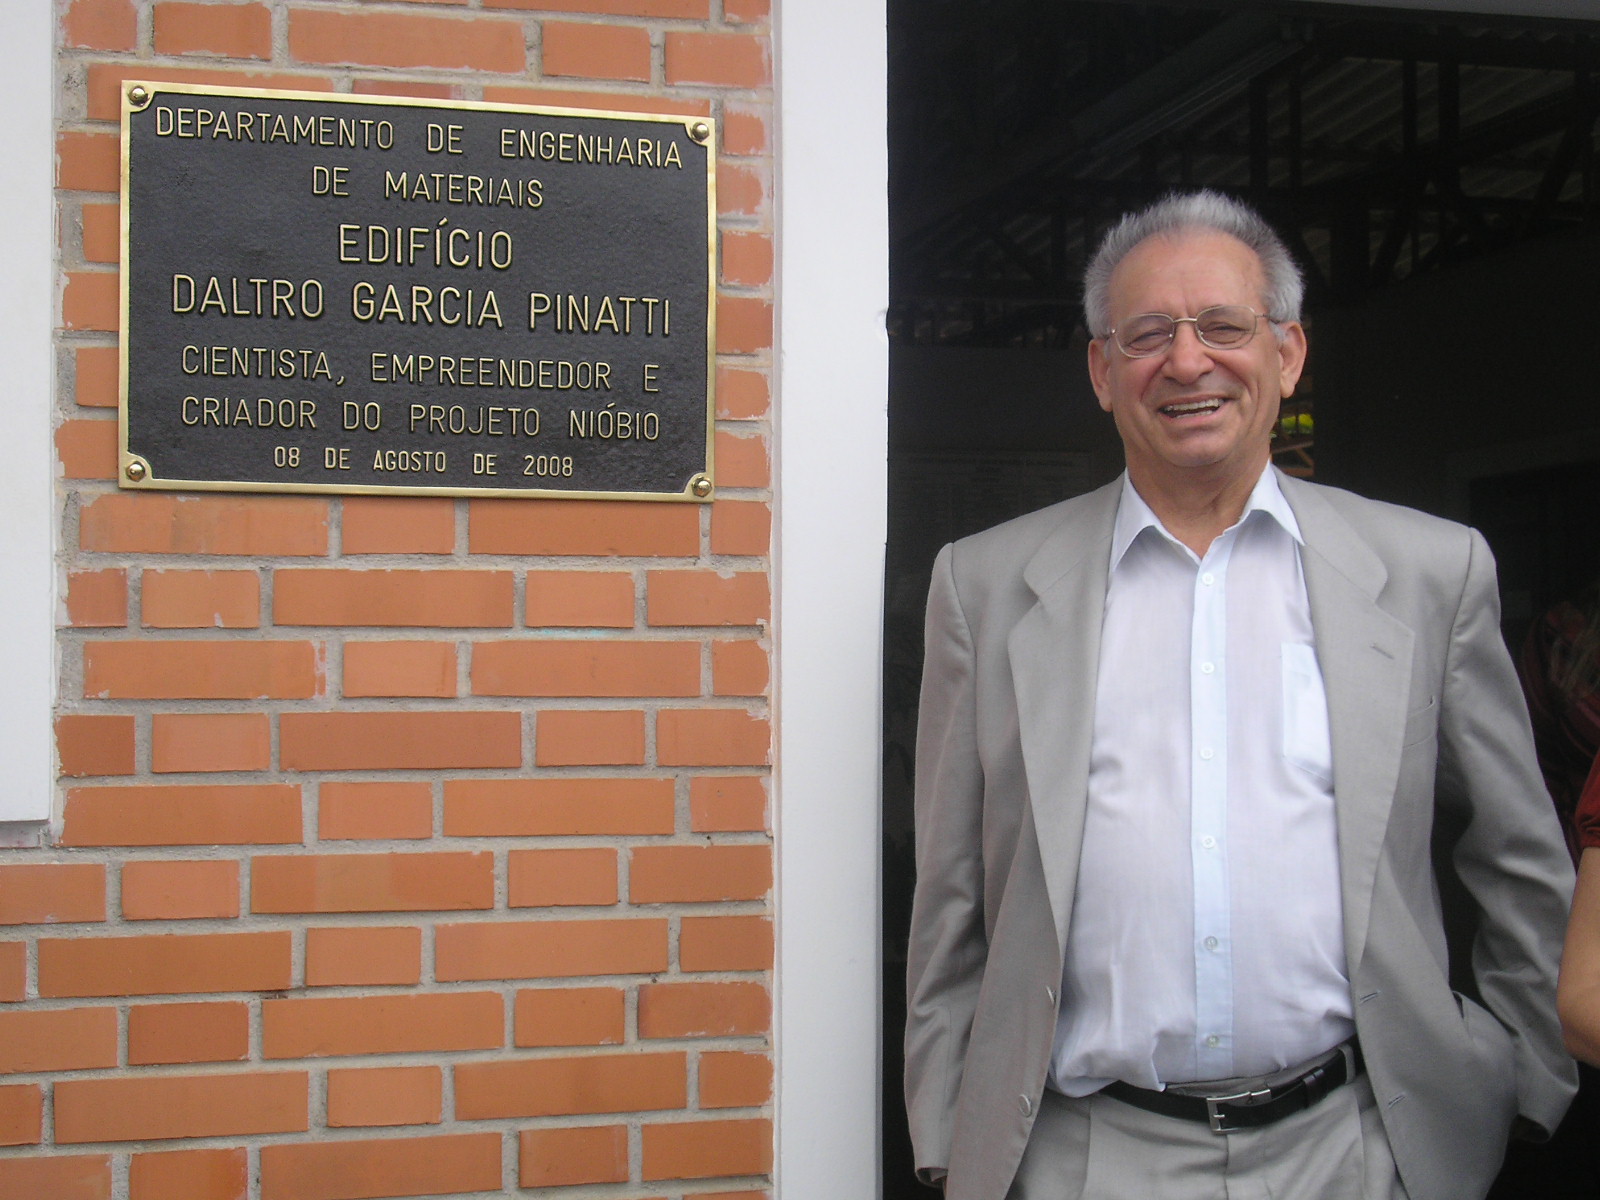 Prof. Daltro Garcia Pinatti